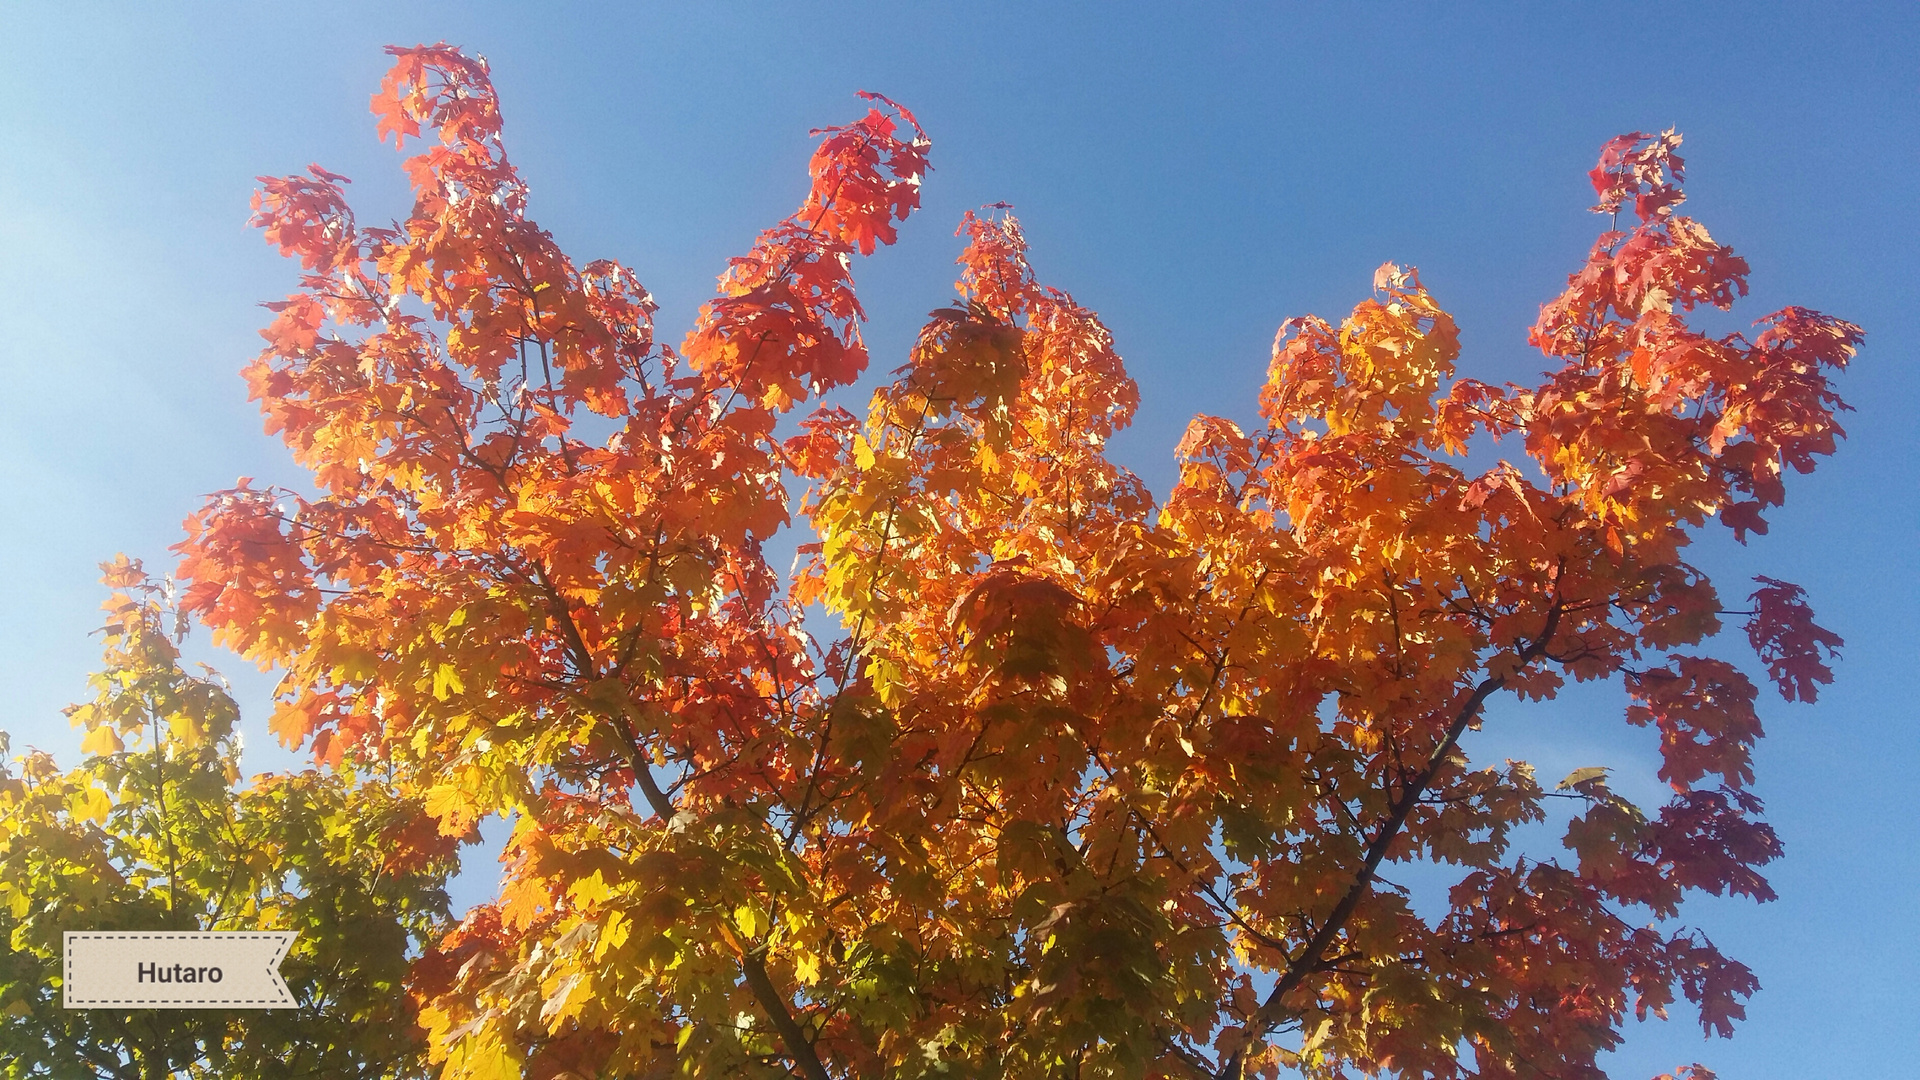 Herbst in seiner schönsten Form!